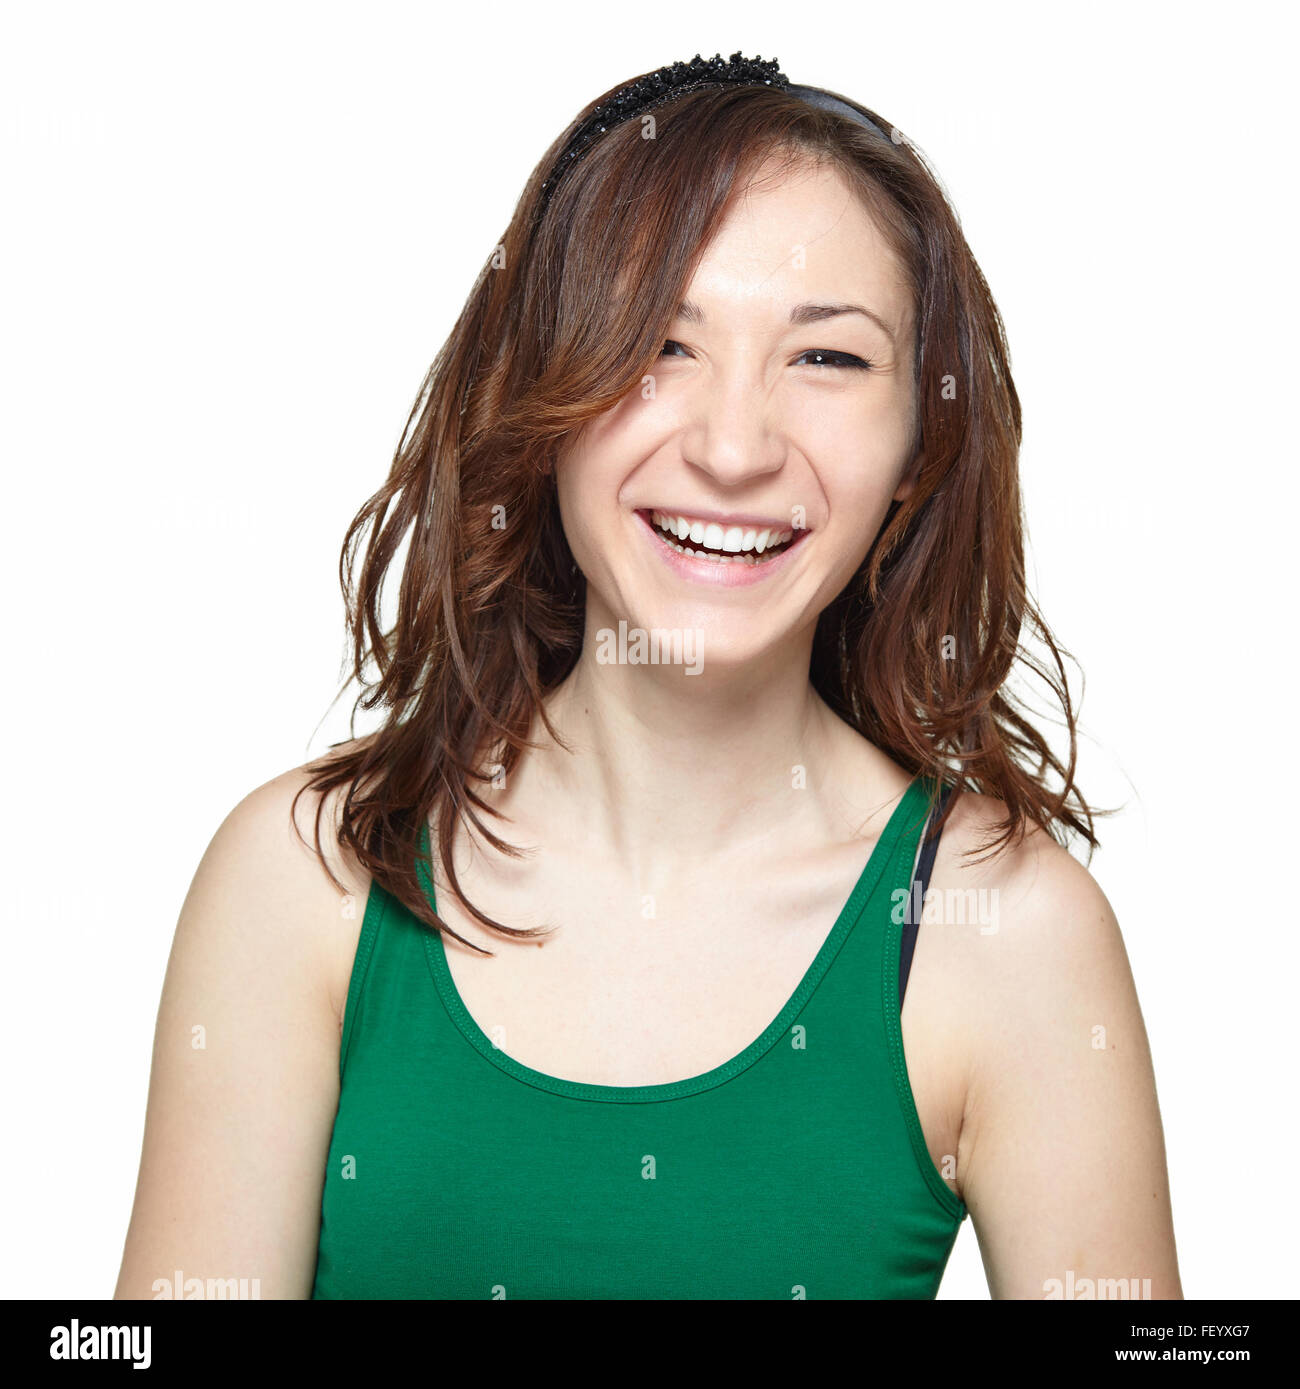 Smiling teenage girl Stock Photo